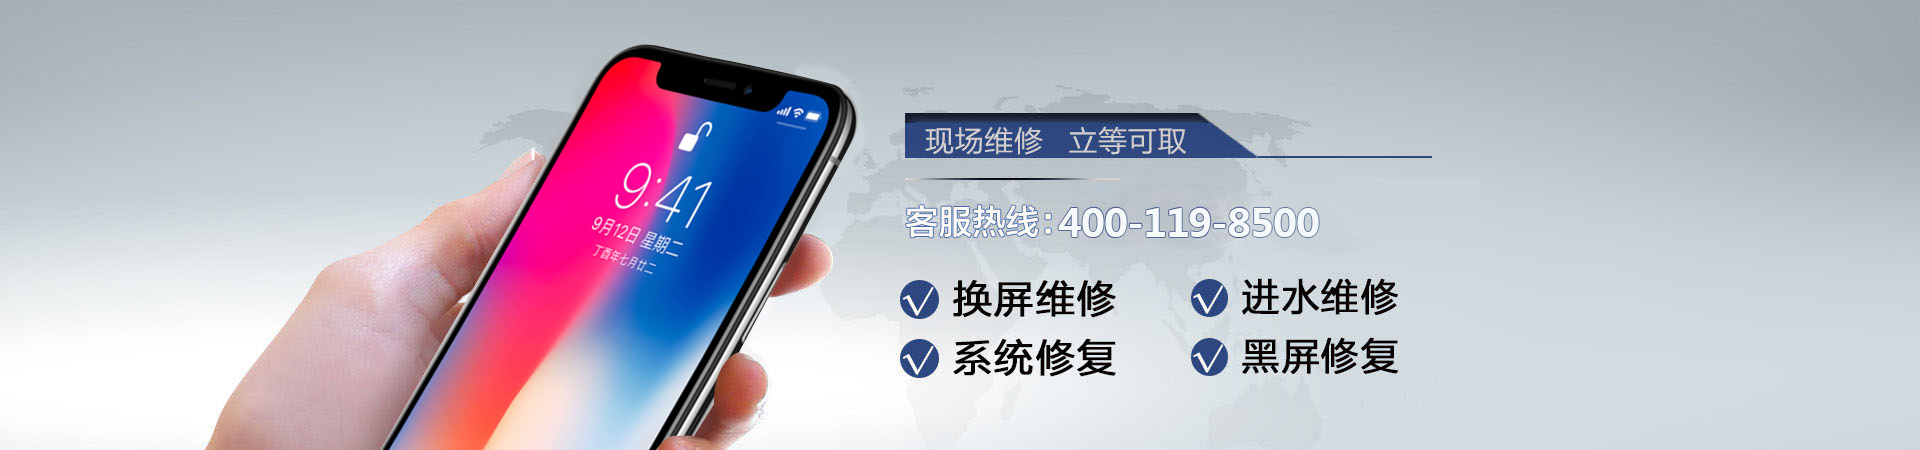 武汉苹果手机维修服务地址查询